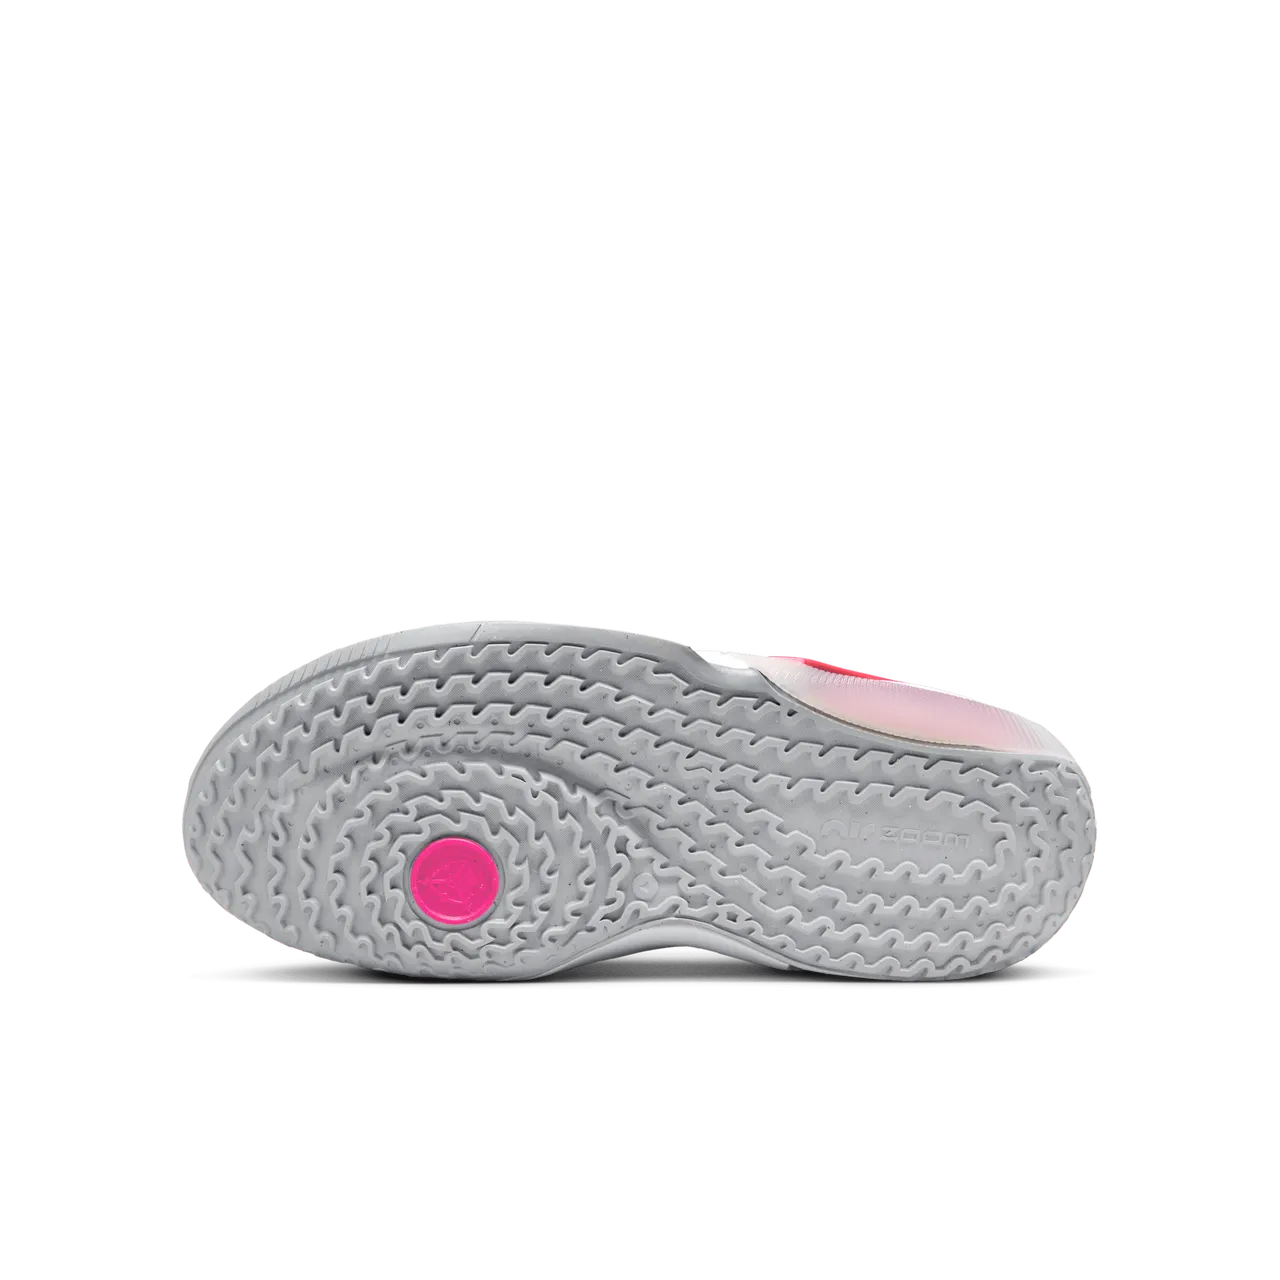 Nike Air Zoom Crossover 2 Basketbalschoenen voor kids - Roze